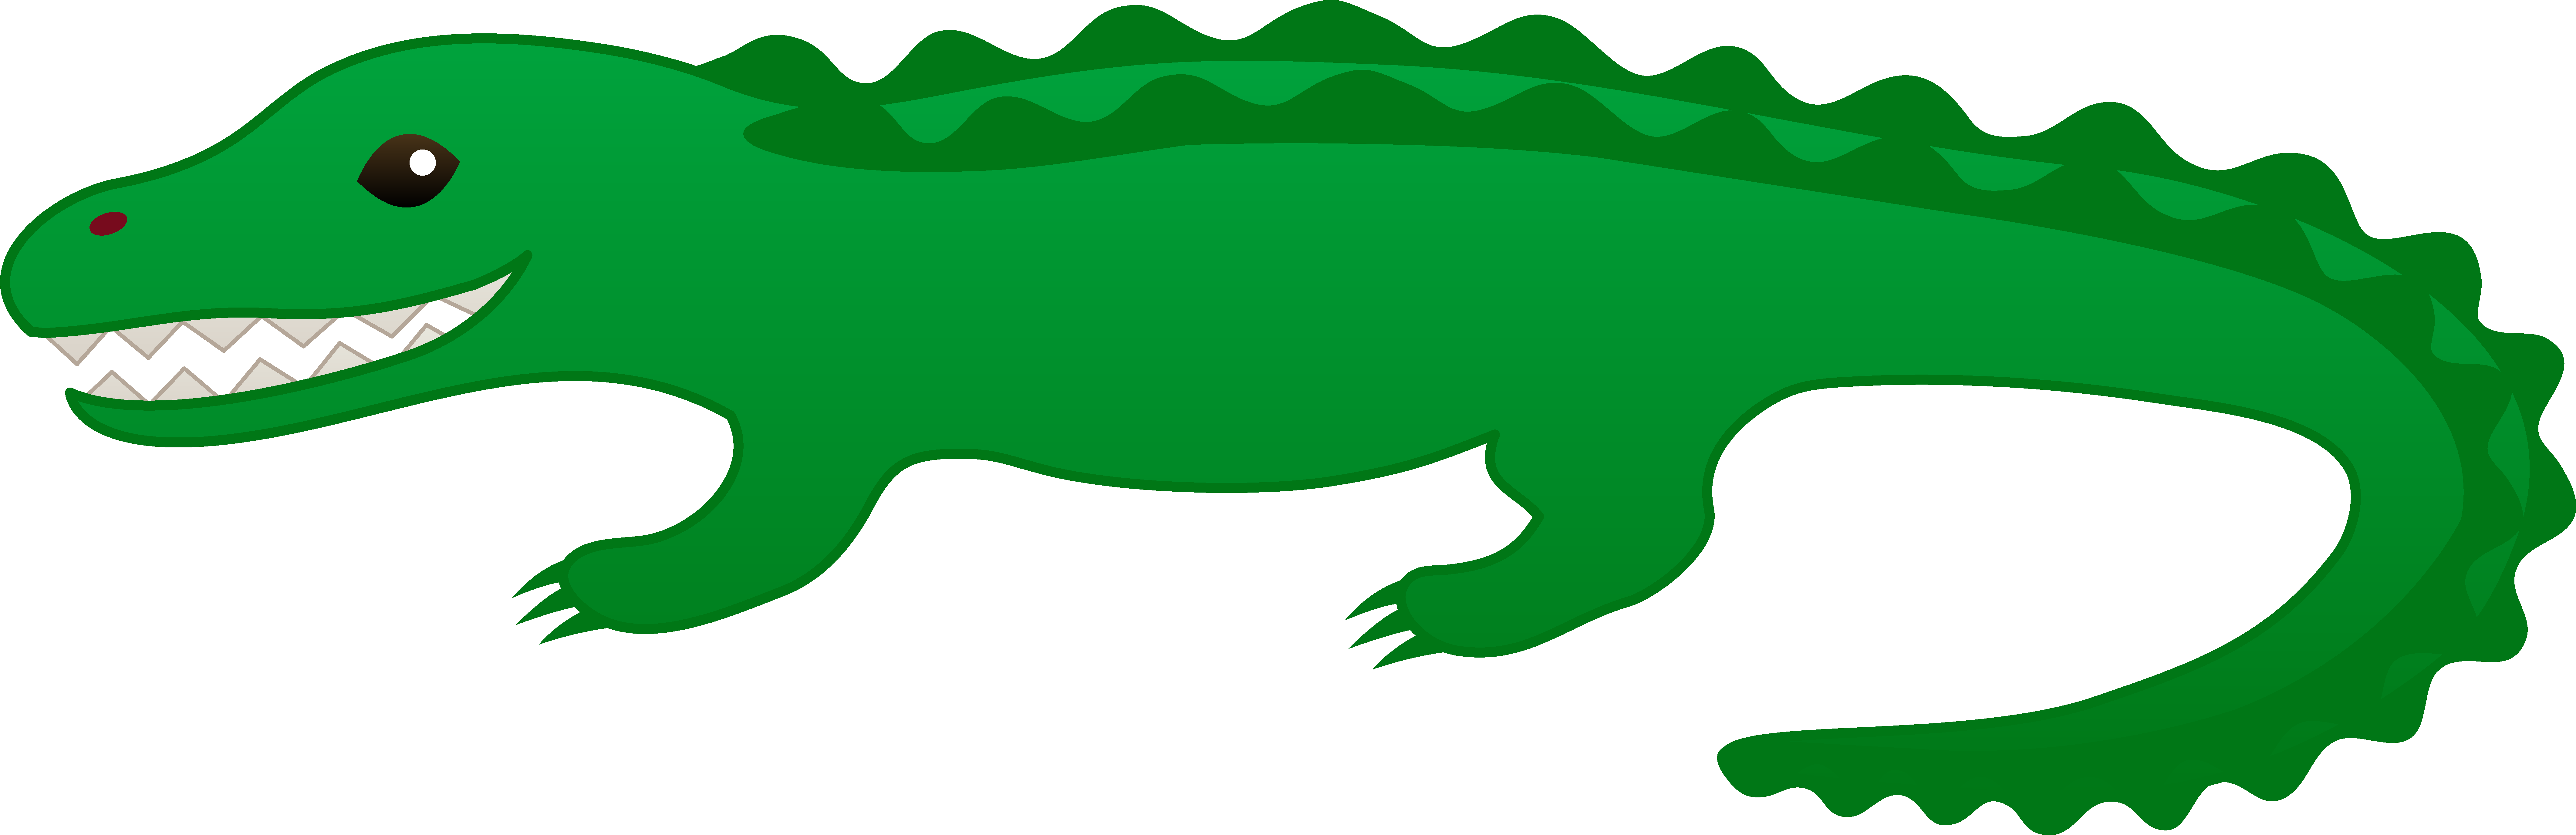 Cartoon Alligator Clip Art - ClipArt Best